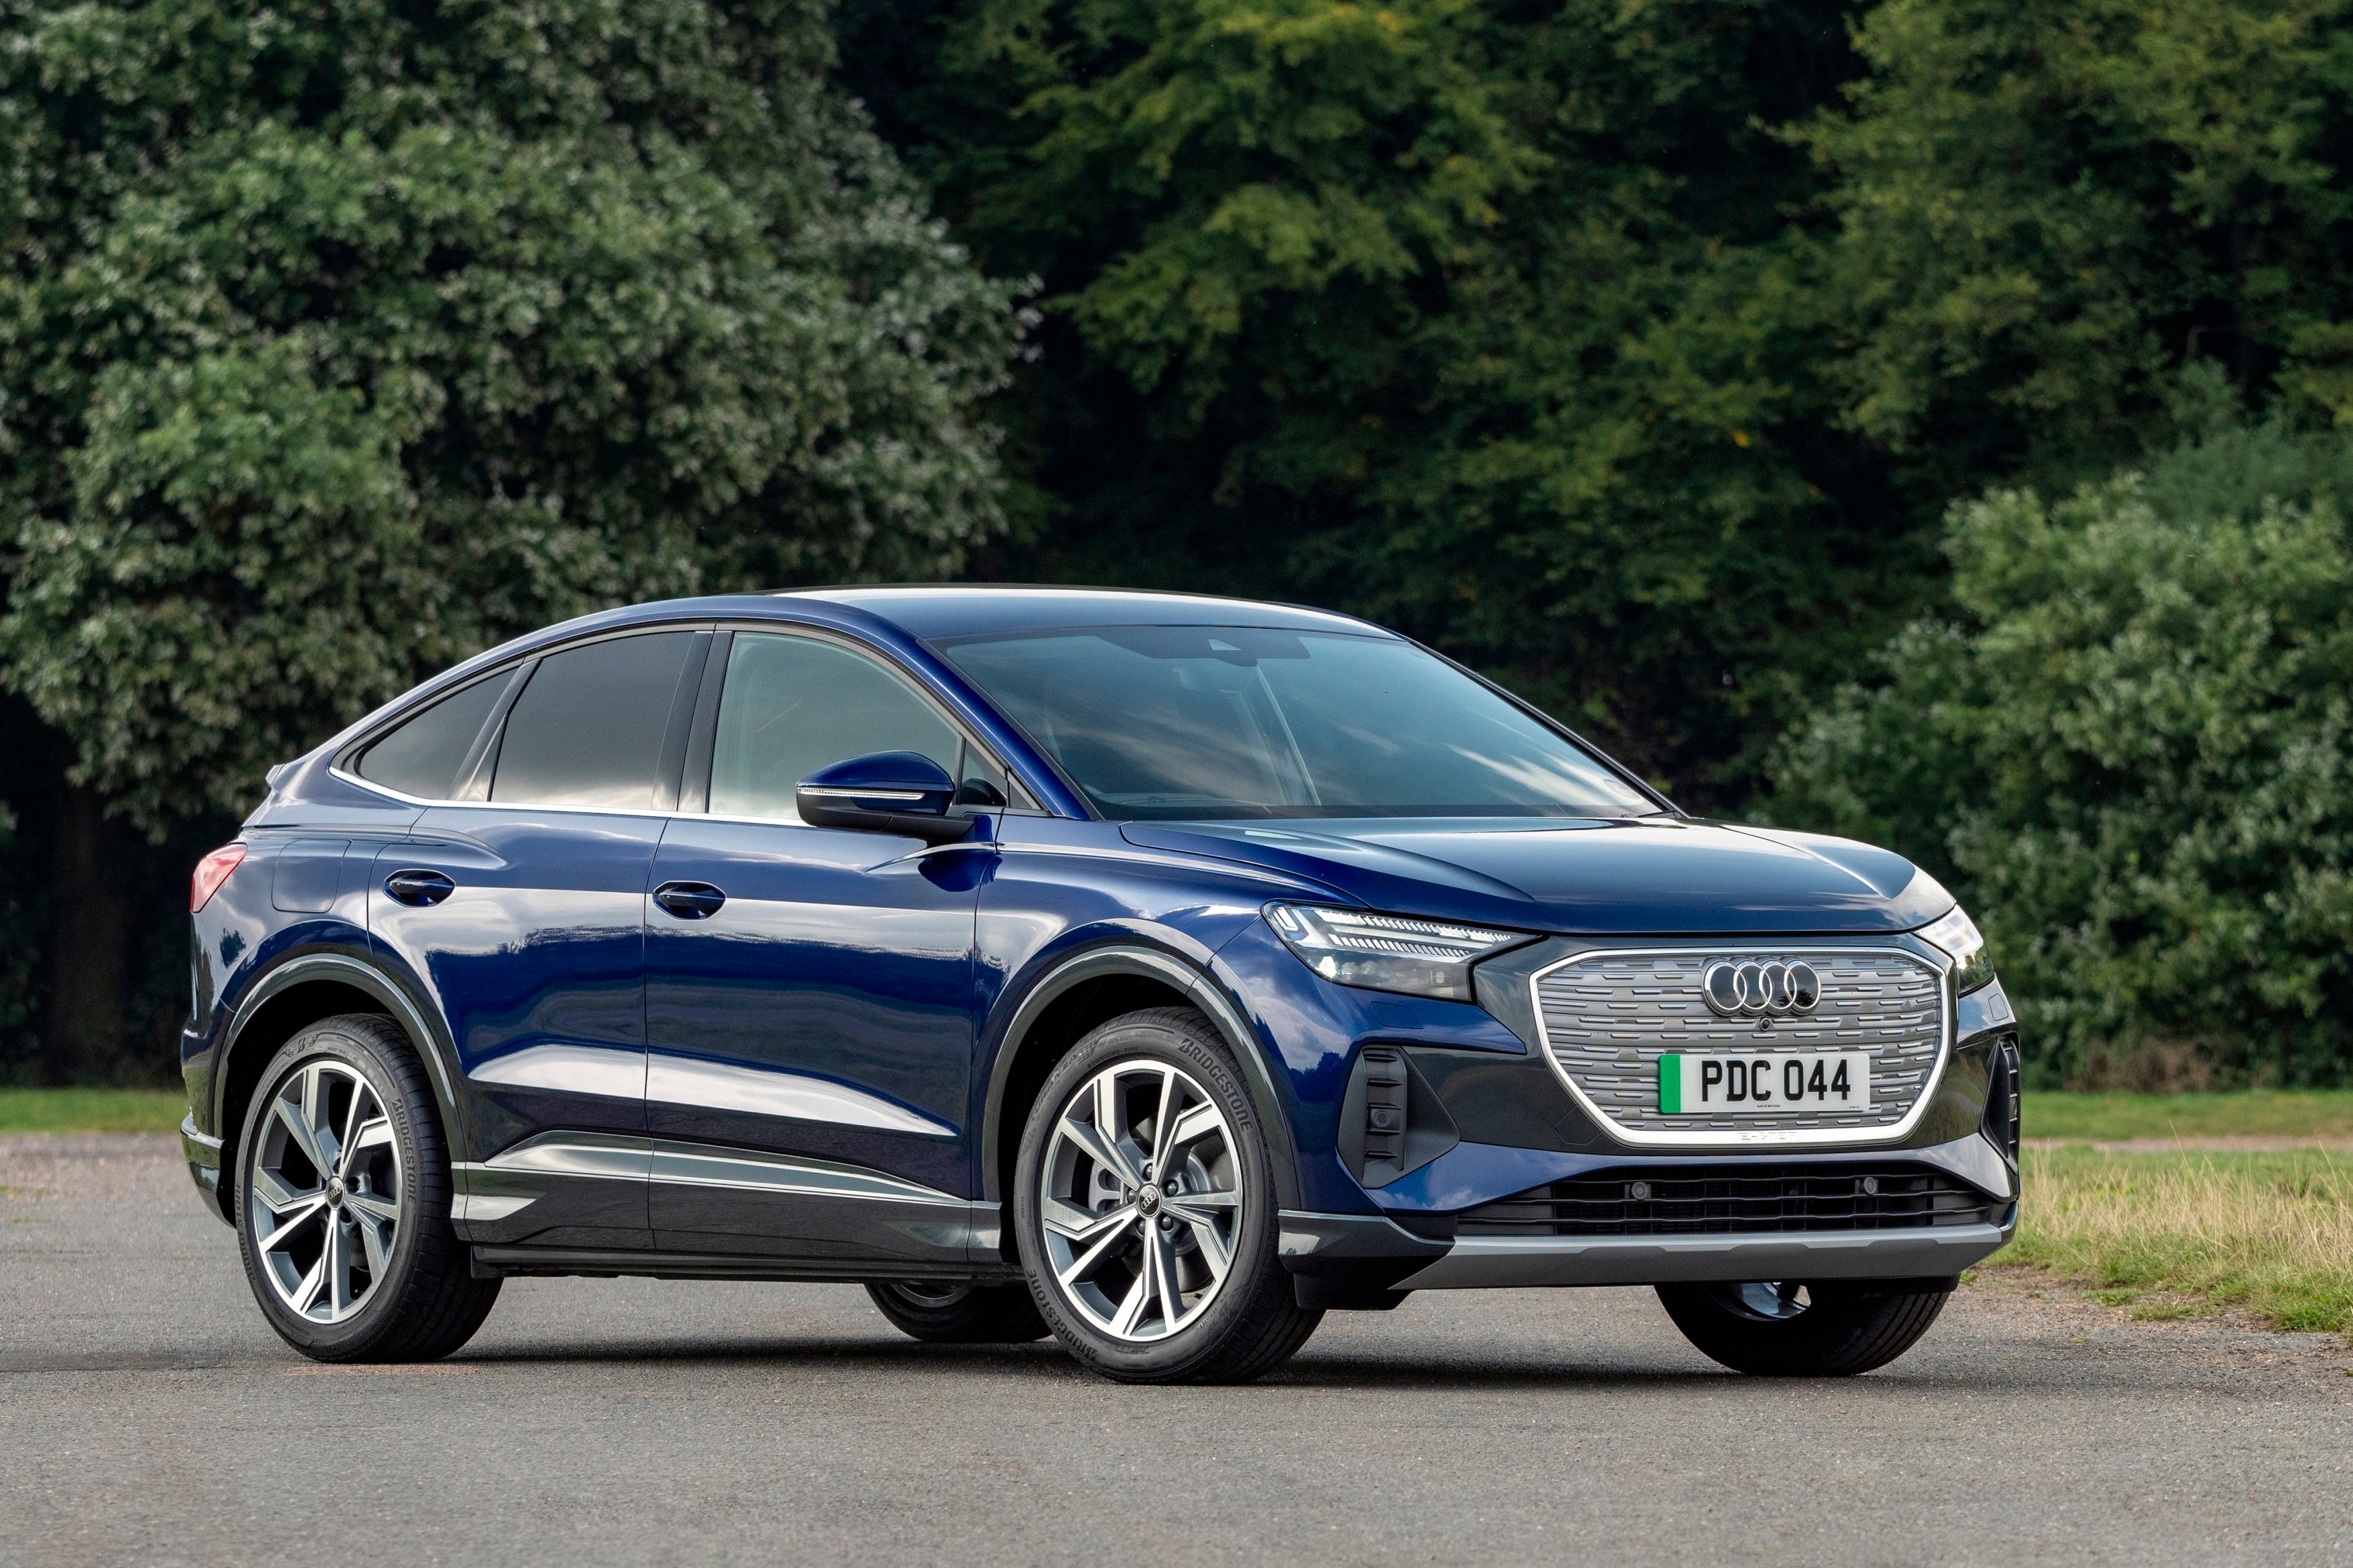 Audi will add sporty version of Q4 e-tron electric SUV